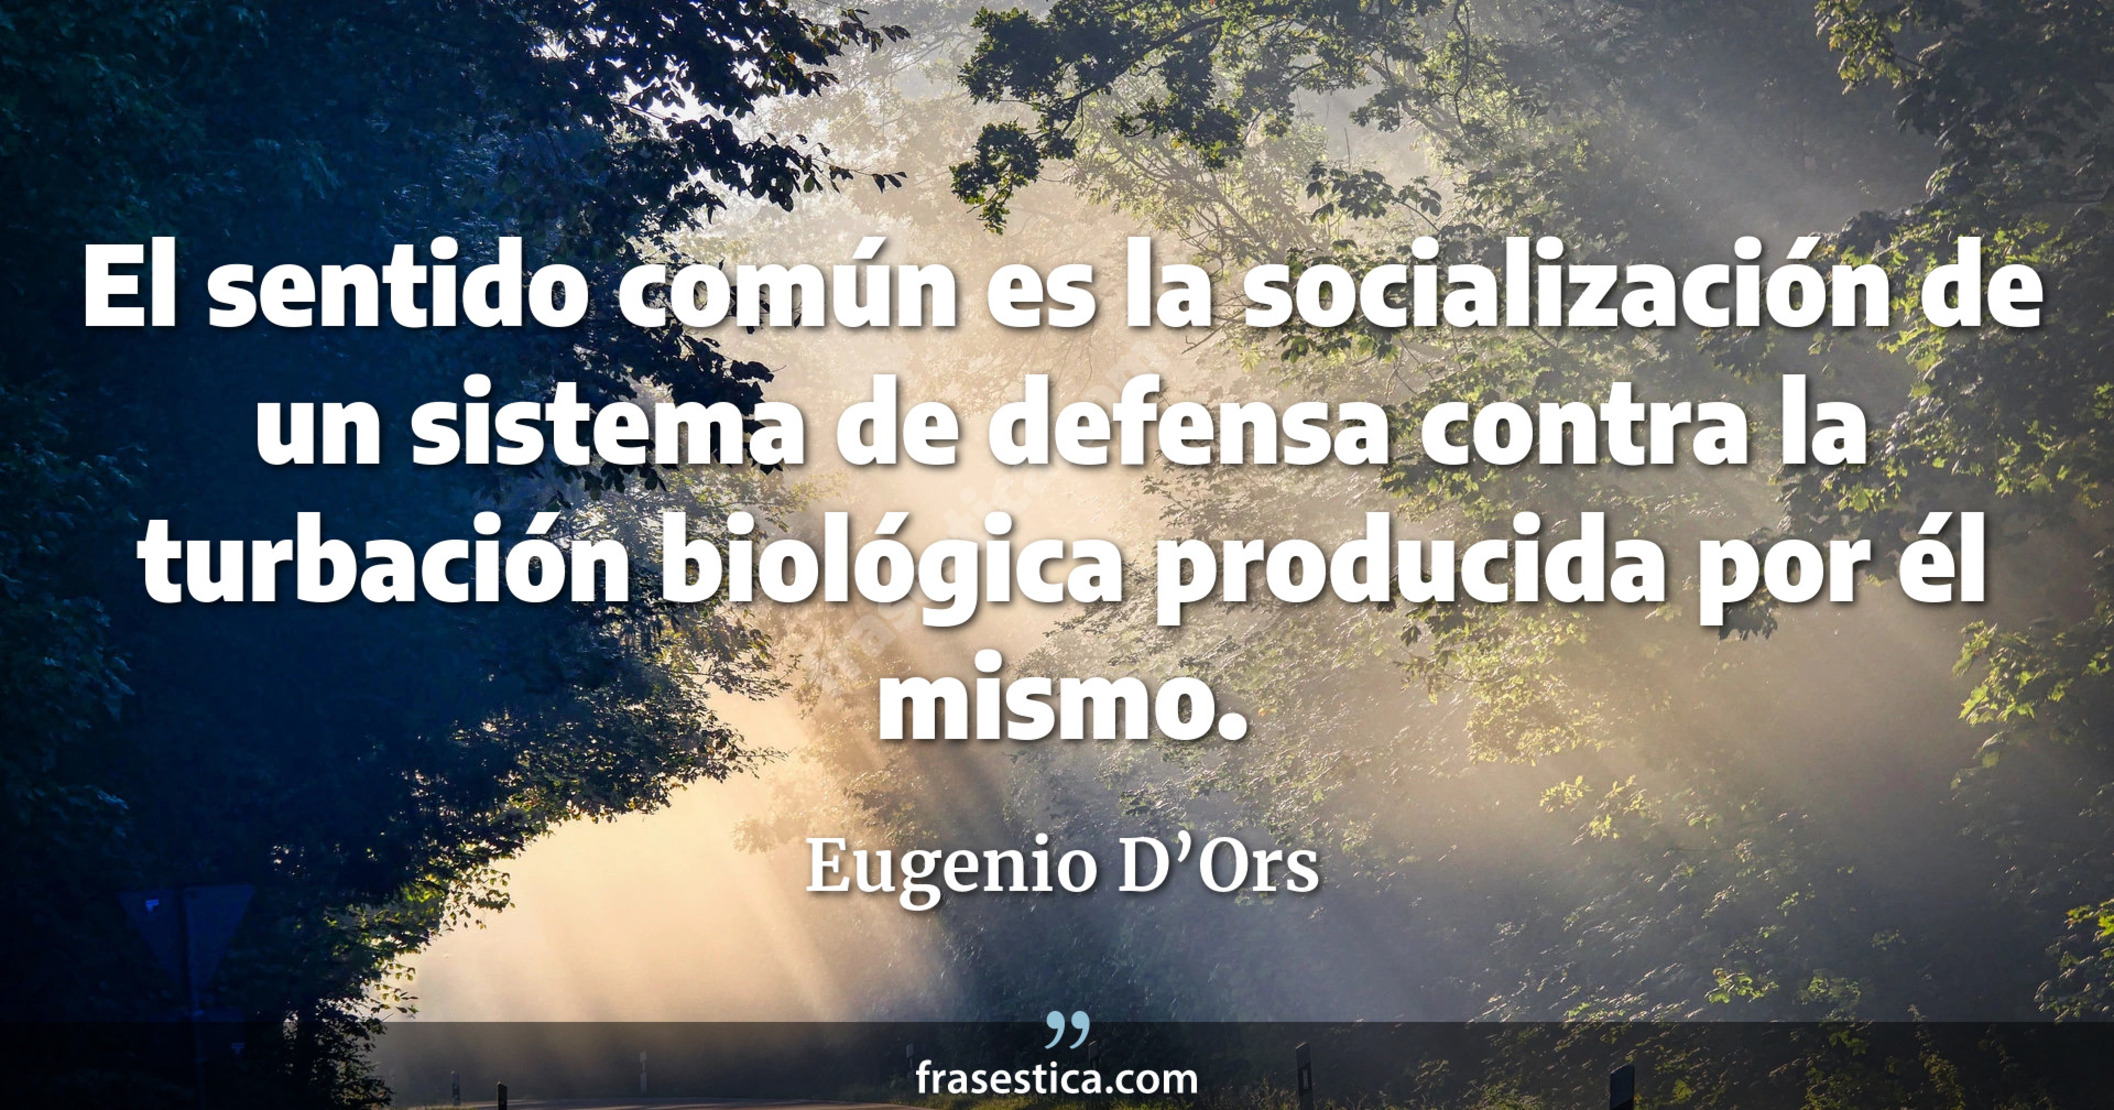 El sentido común es la socialización de un sistema de defensa contra la turbación biológica producida por él mismo. - Eugenio D’Ors